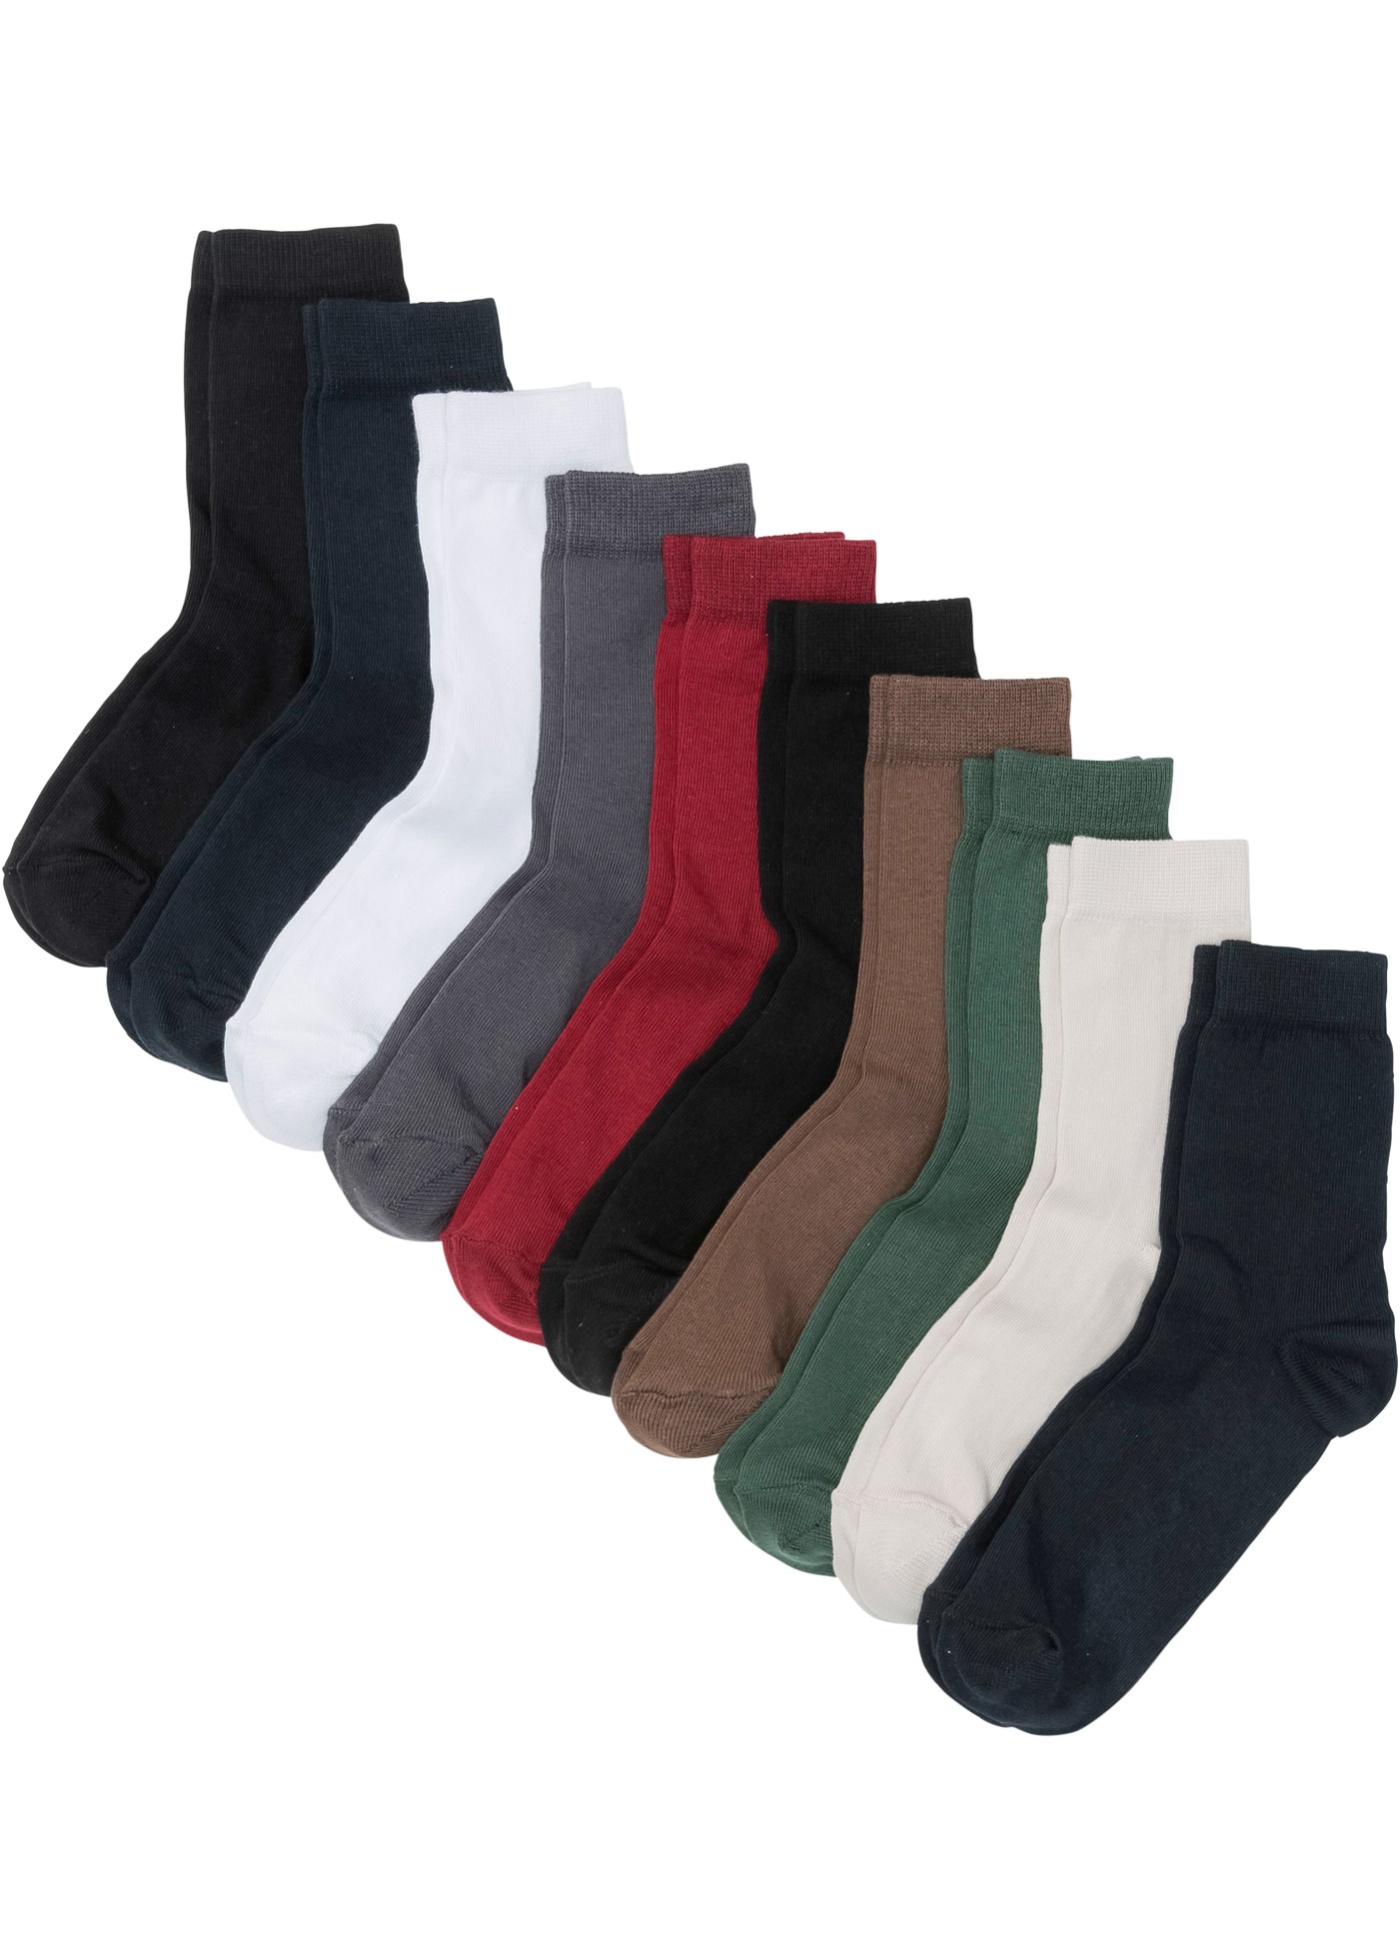 Bonprix: 10er-Pack Bio-Baumwolle Socken (Grössen 35-46) für nur 6.95 Franken, inkl. Lieferung (nur heute)